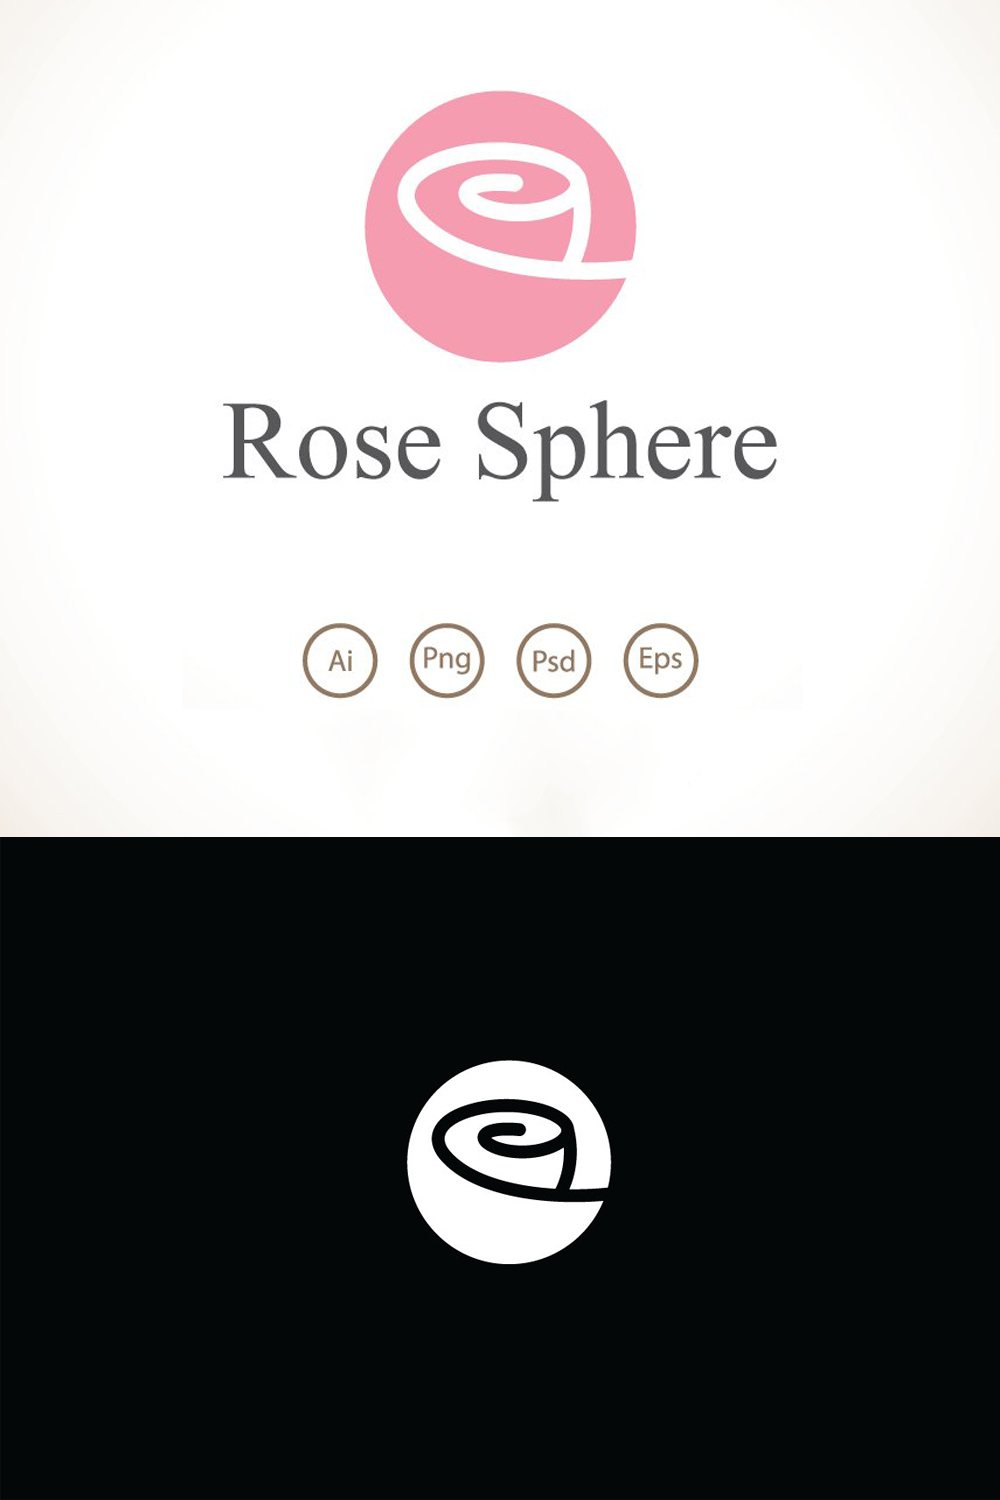 Rose sphere logo template of pinterest.